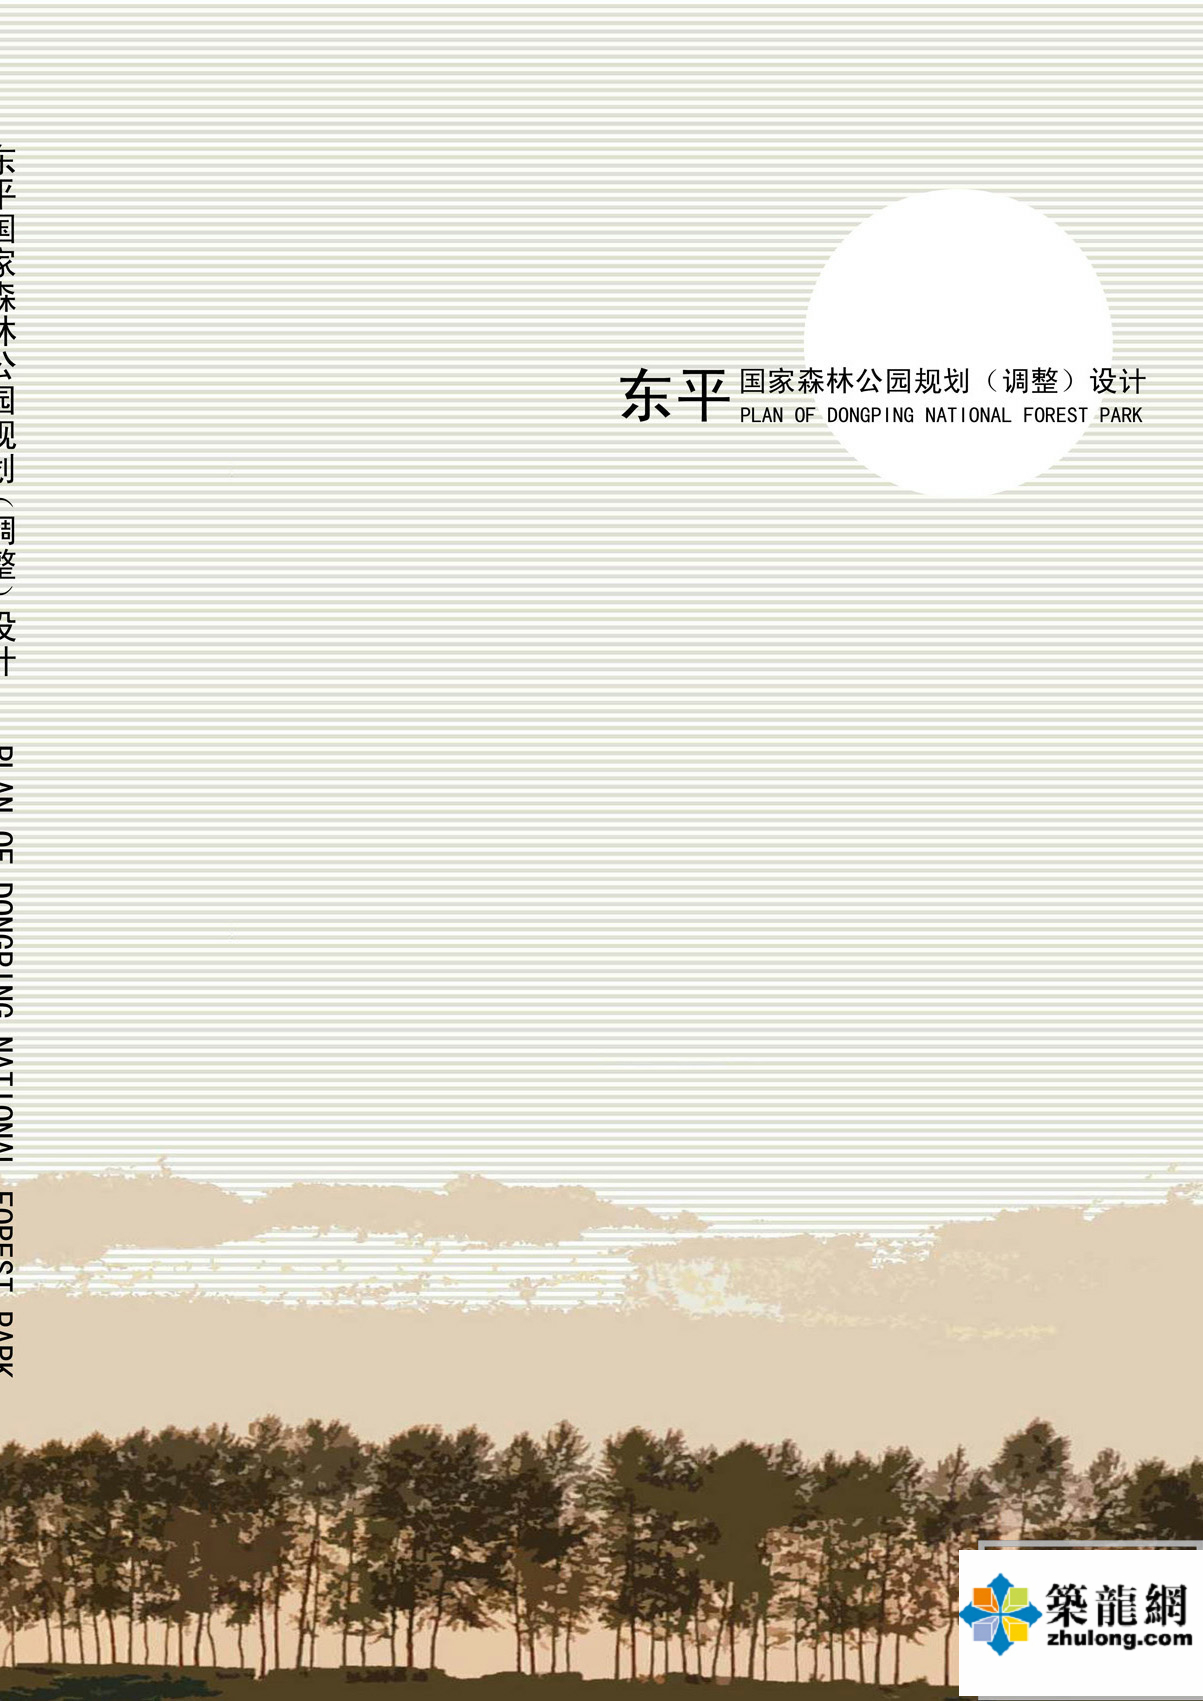 [上海]国家森林公园总体规划设计文本